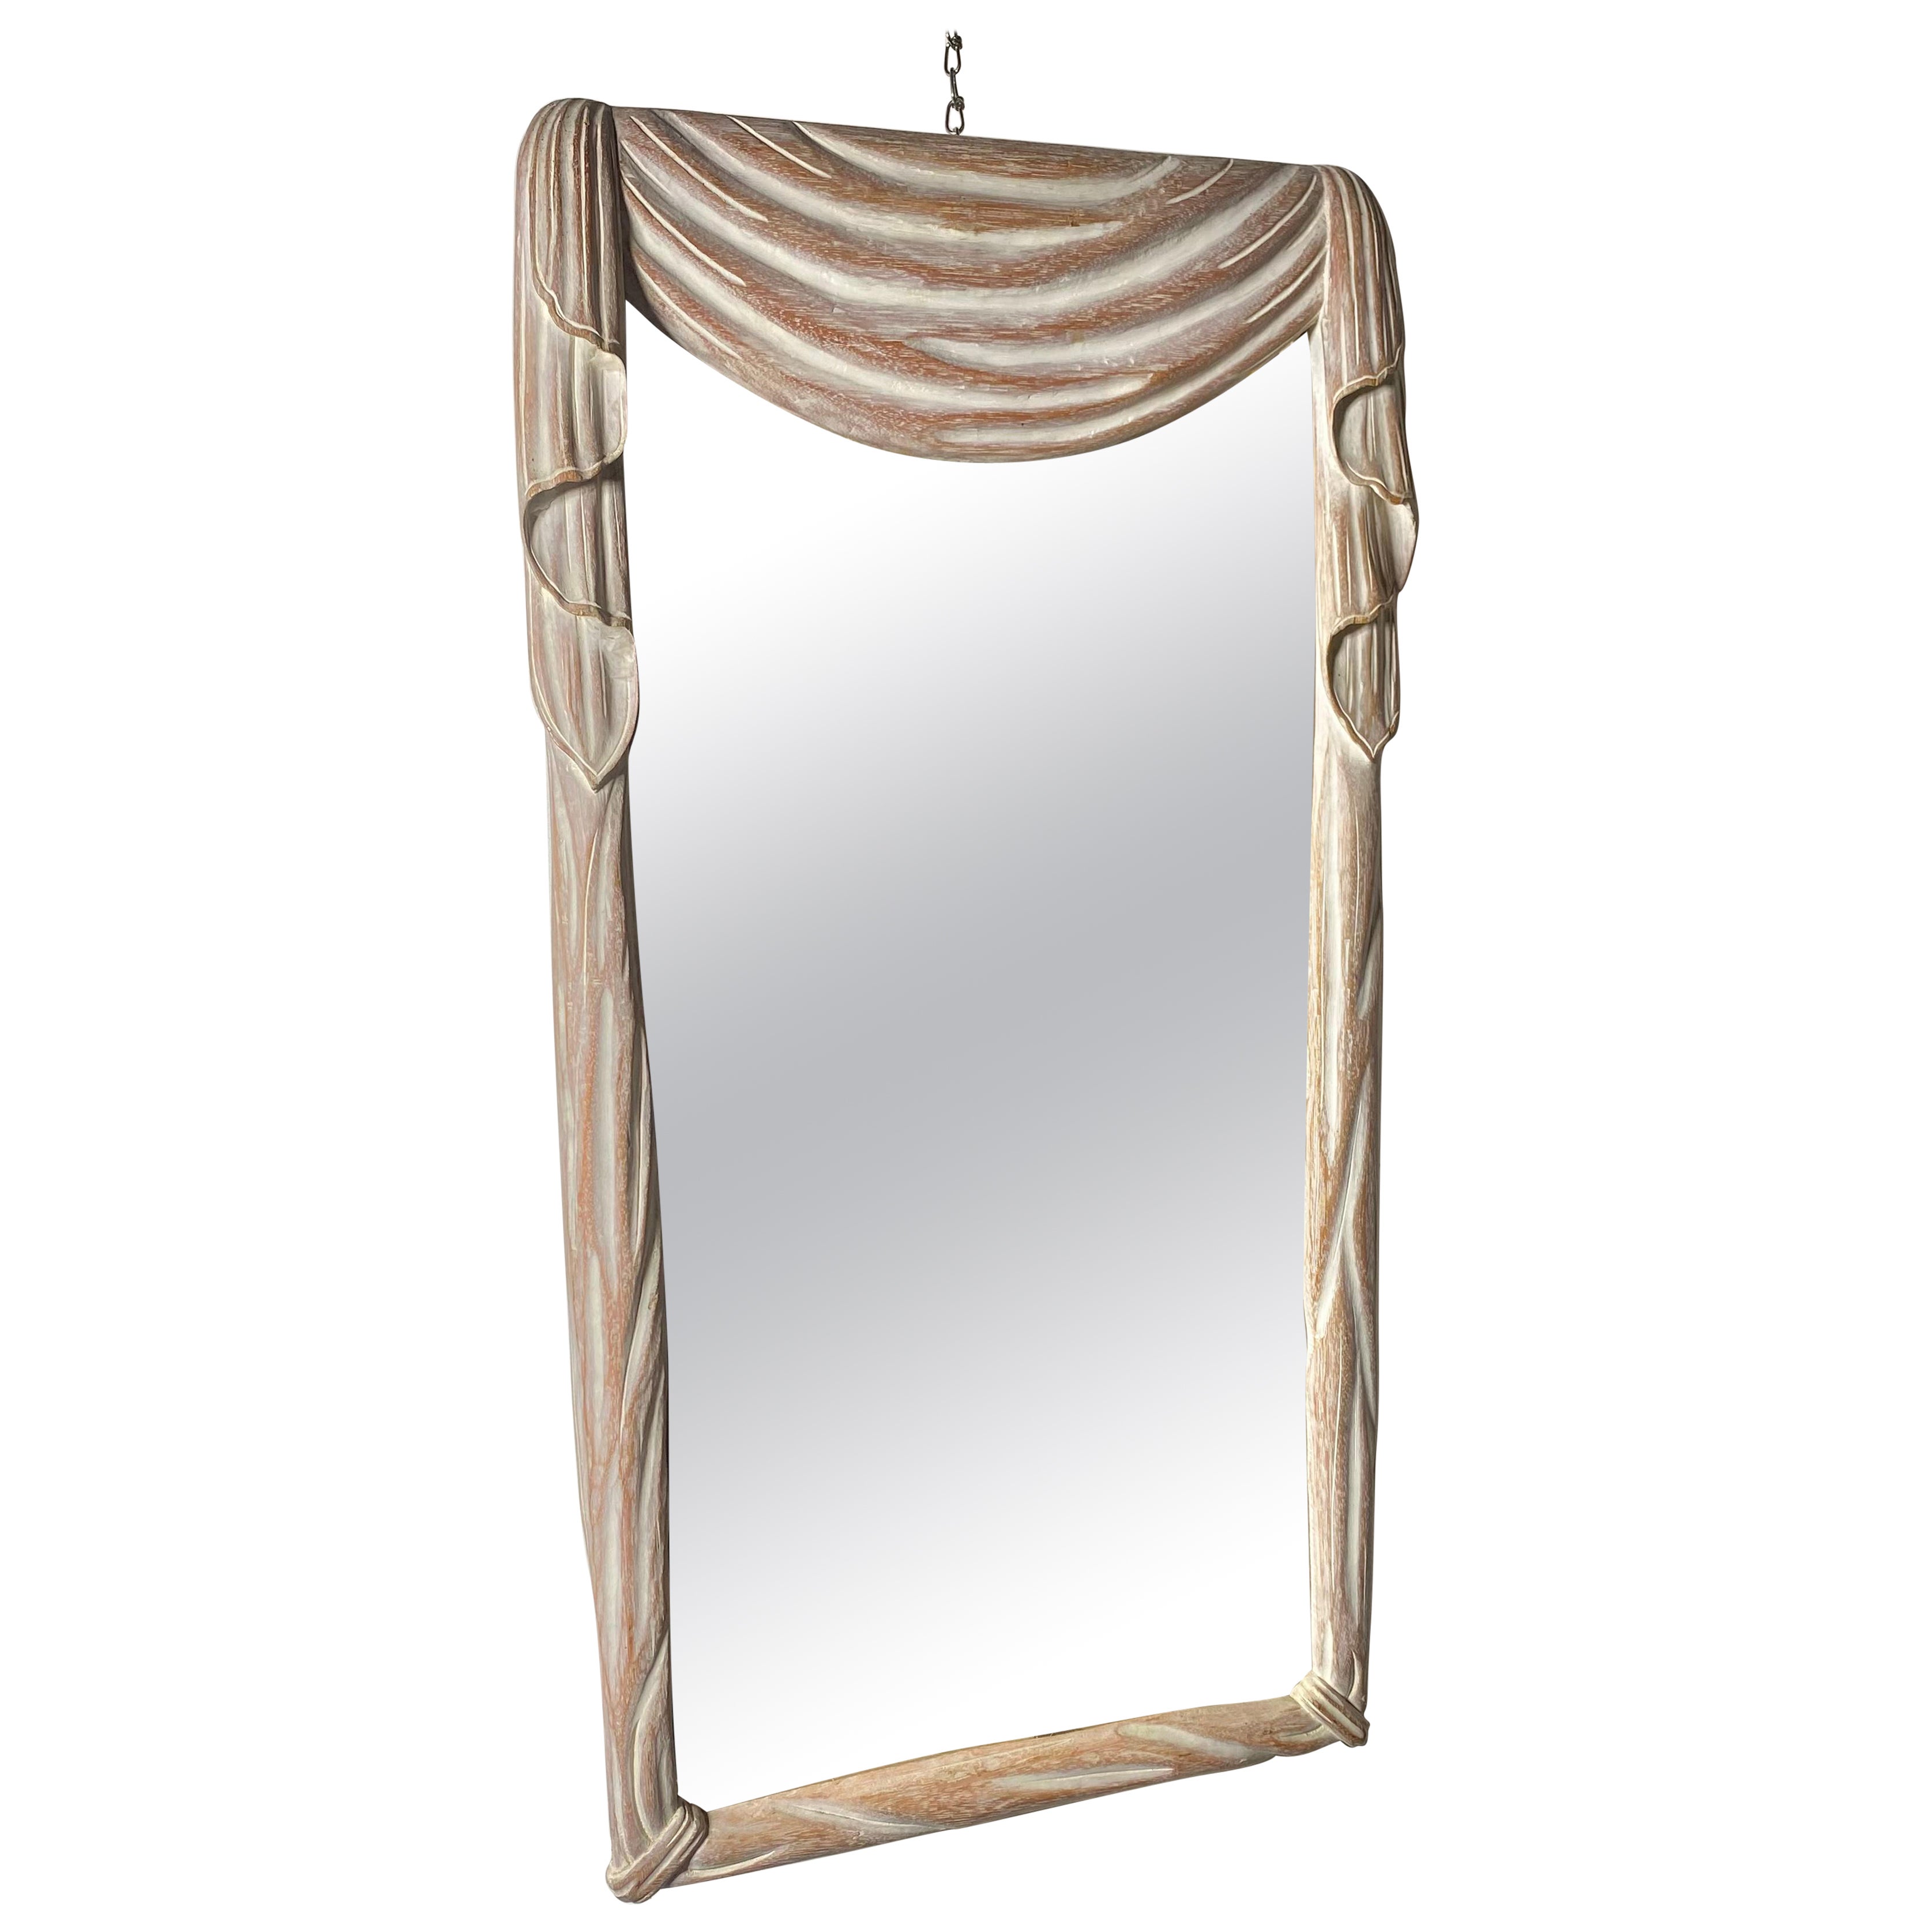 Modernist Regency Cerused Wood "Drape" mirror att to Osvaldo Borsani For Sale